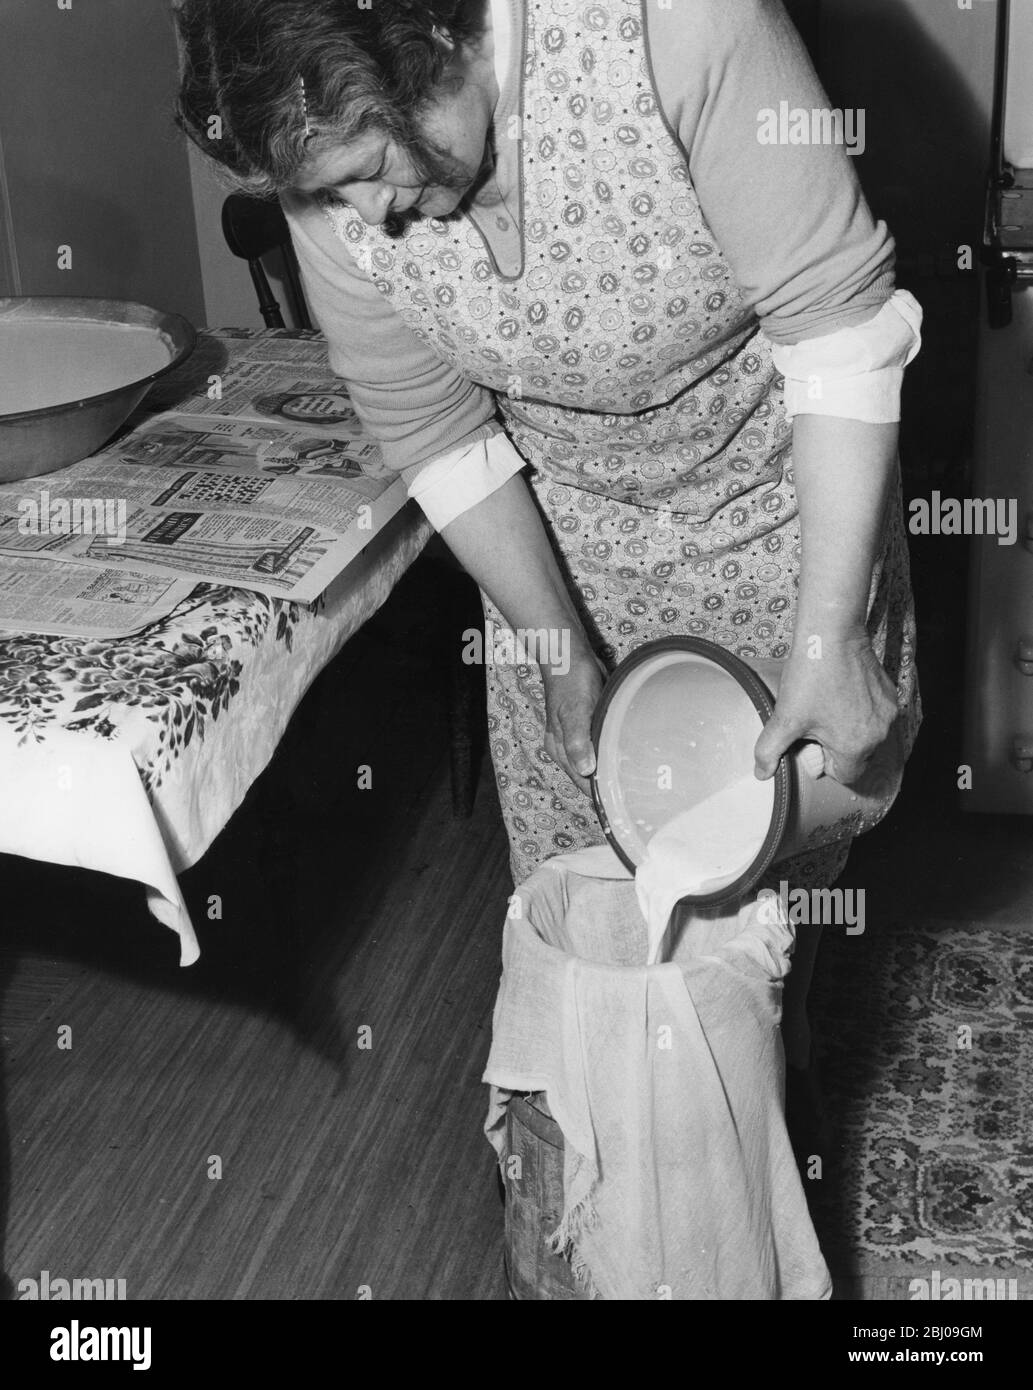 Mlle Peggy Macleod faisant du beurre verser le lait par le mousseline dans une urne à Daliburgh South Uist Outer Hebridges Scotland - septembre 1961 Banque D'Images